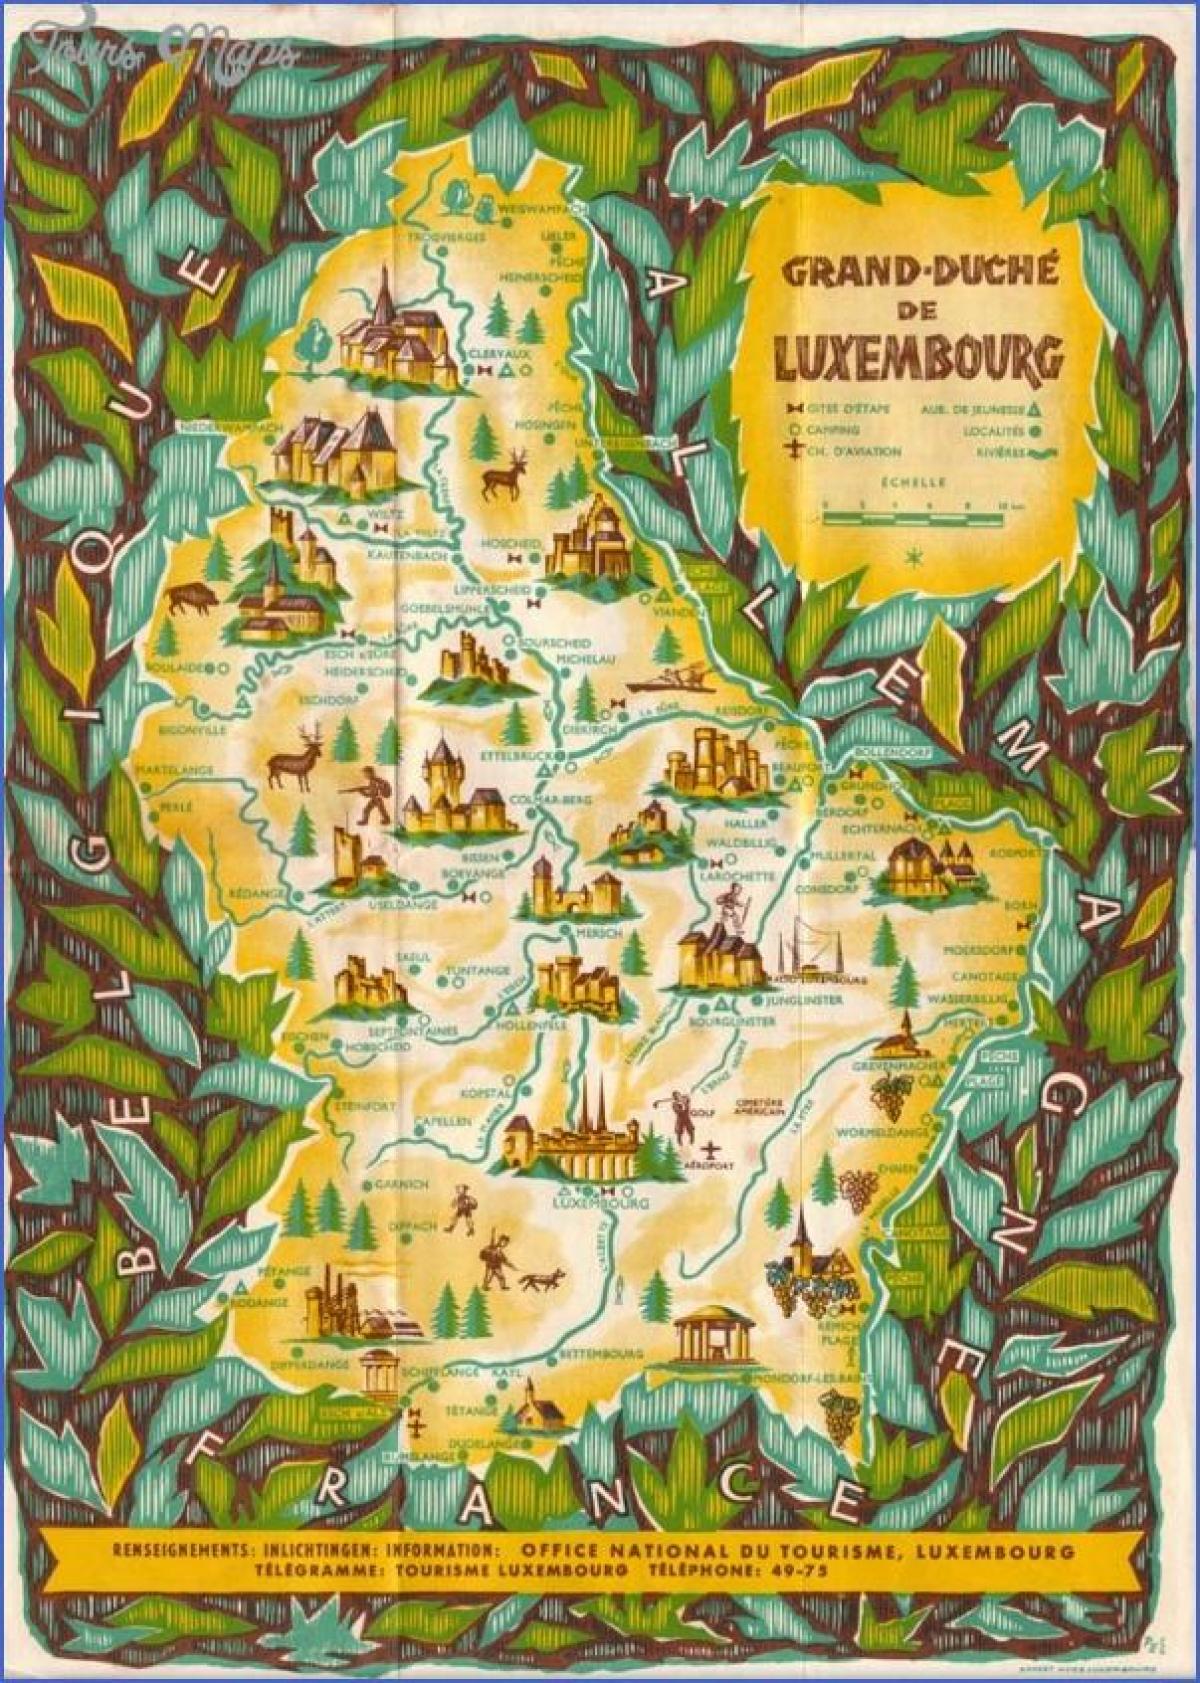 خريطة لوكسمبورغ لمشاهدة معالم المدينة